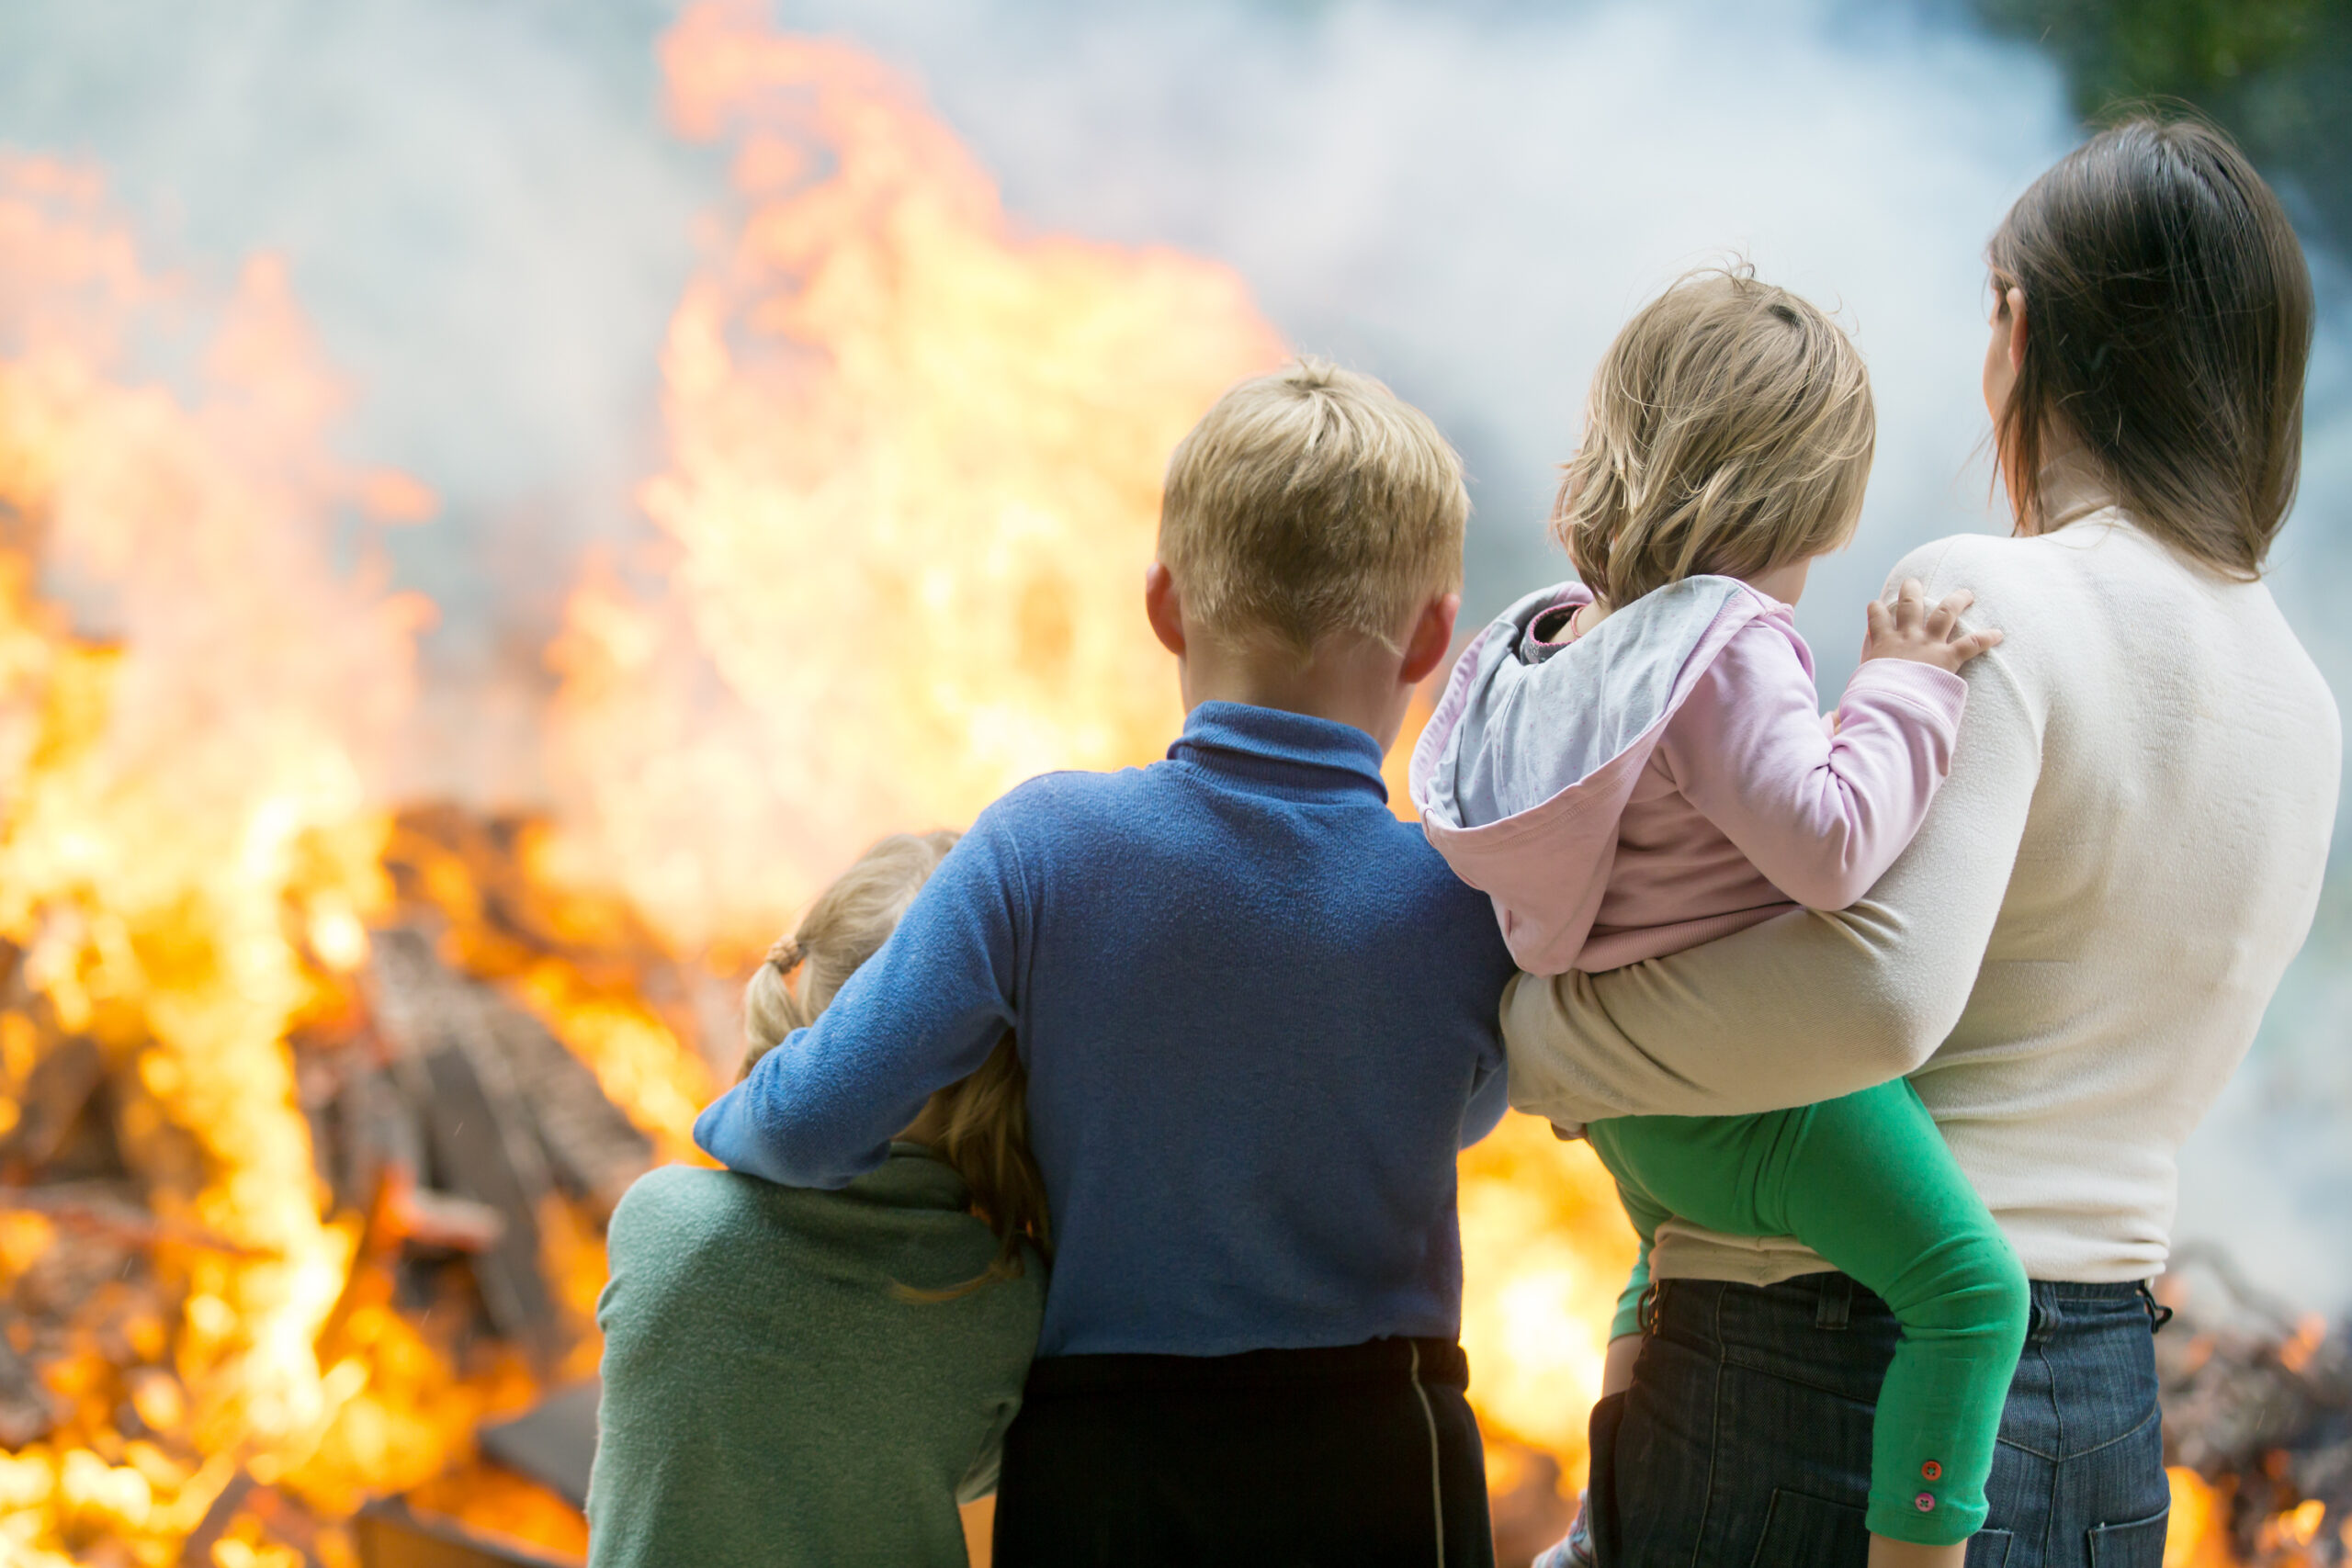 Het is belangrijk om brandveiligheidsproducten in huis te hebben, omdat een brand een van de meest verwoestende gebeurtenissen kan zijn die in een woning kunnen plaatsvinden. Branden kunnen zeer snel uit de hand lopen en in een korte tijd enorme schade aanrichten. Bovendien kunnen branden gevaarlijk zijn voor jouw gezin in huis, omdat ze letsel of zelfs de dood kunnen veroorzaken.